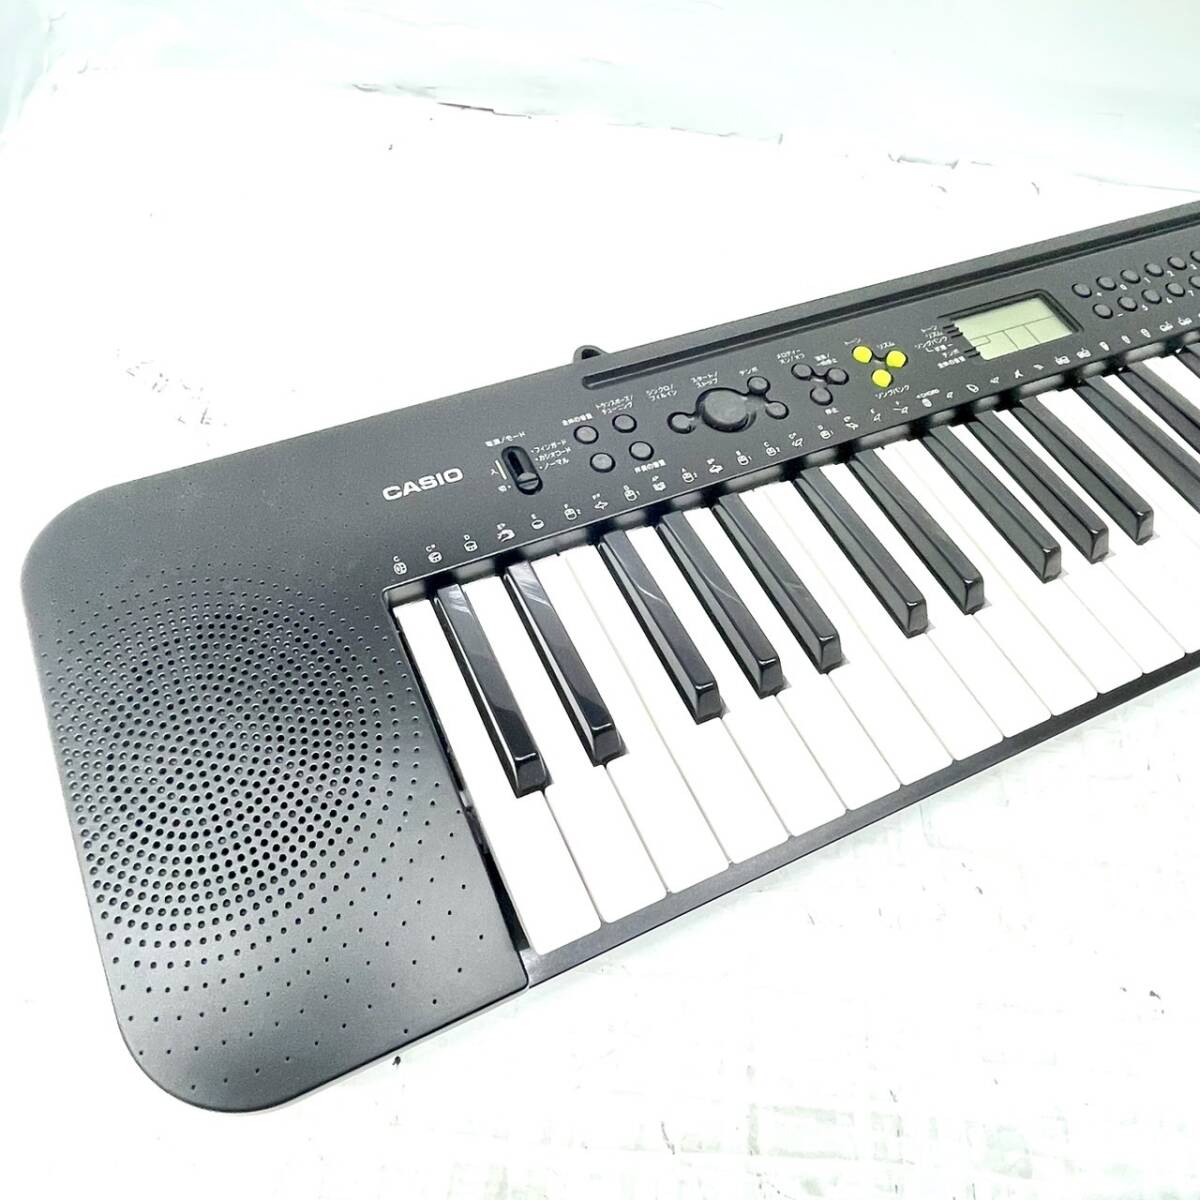  бесплатная доставка h58743 CASIO Casio электронный клавиатура CTK-240 49 клавиатура электронное пианино 2022 год производства музыкальные инструменты клавишные инструменты музыка 